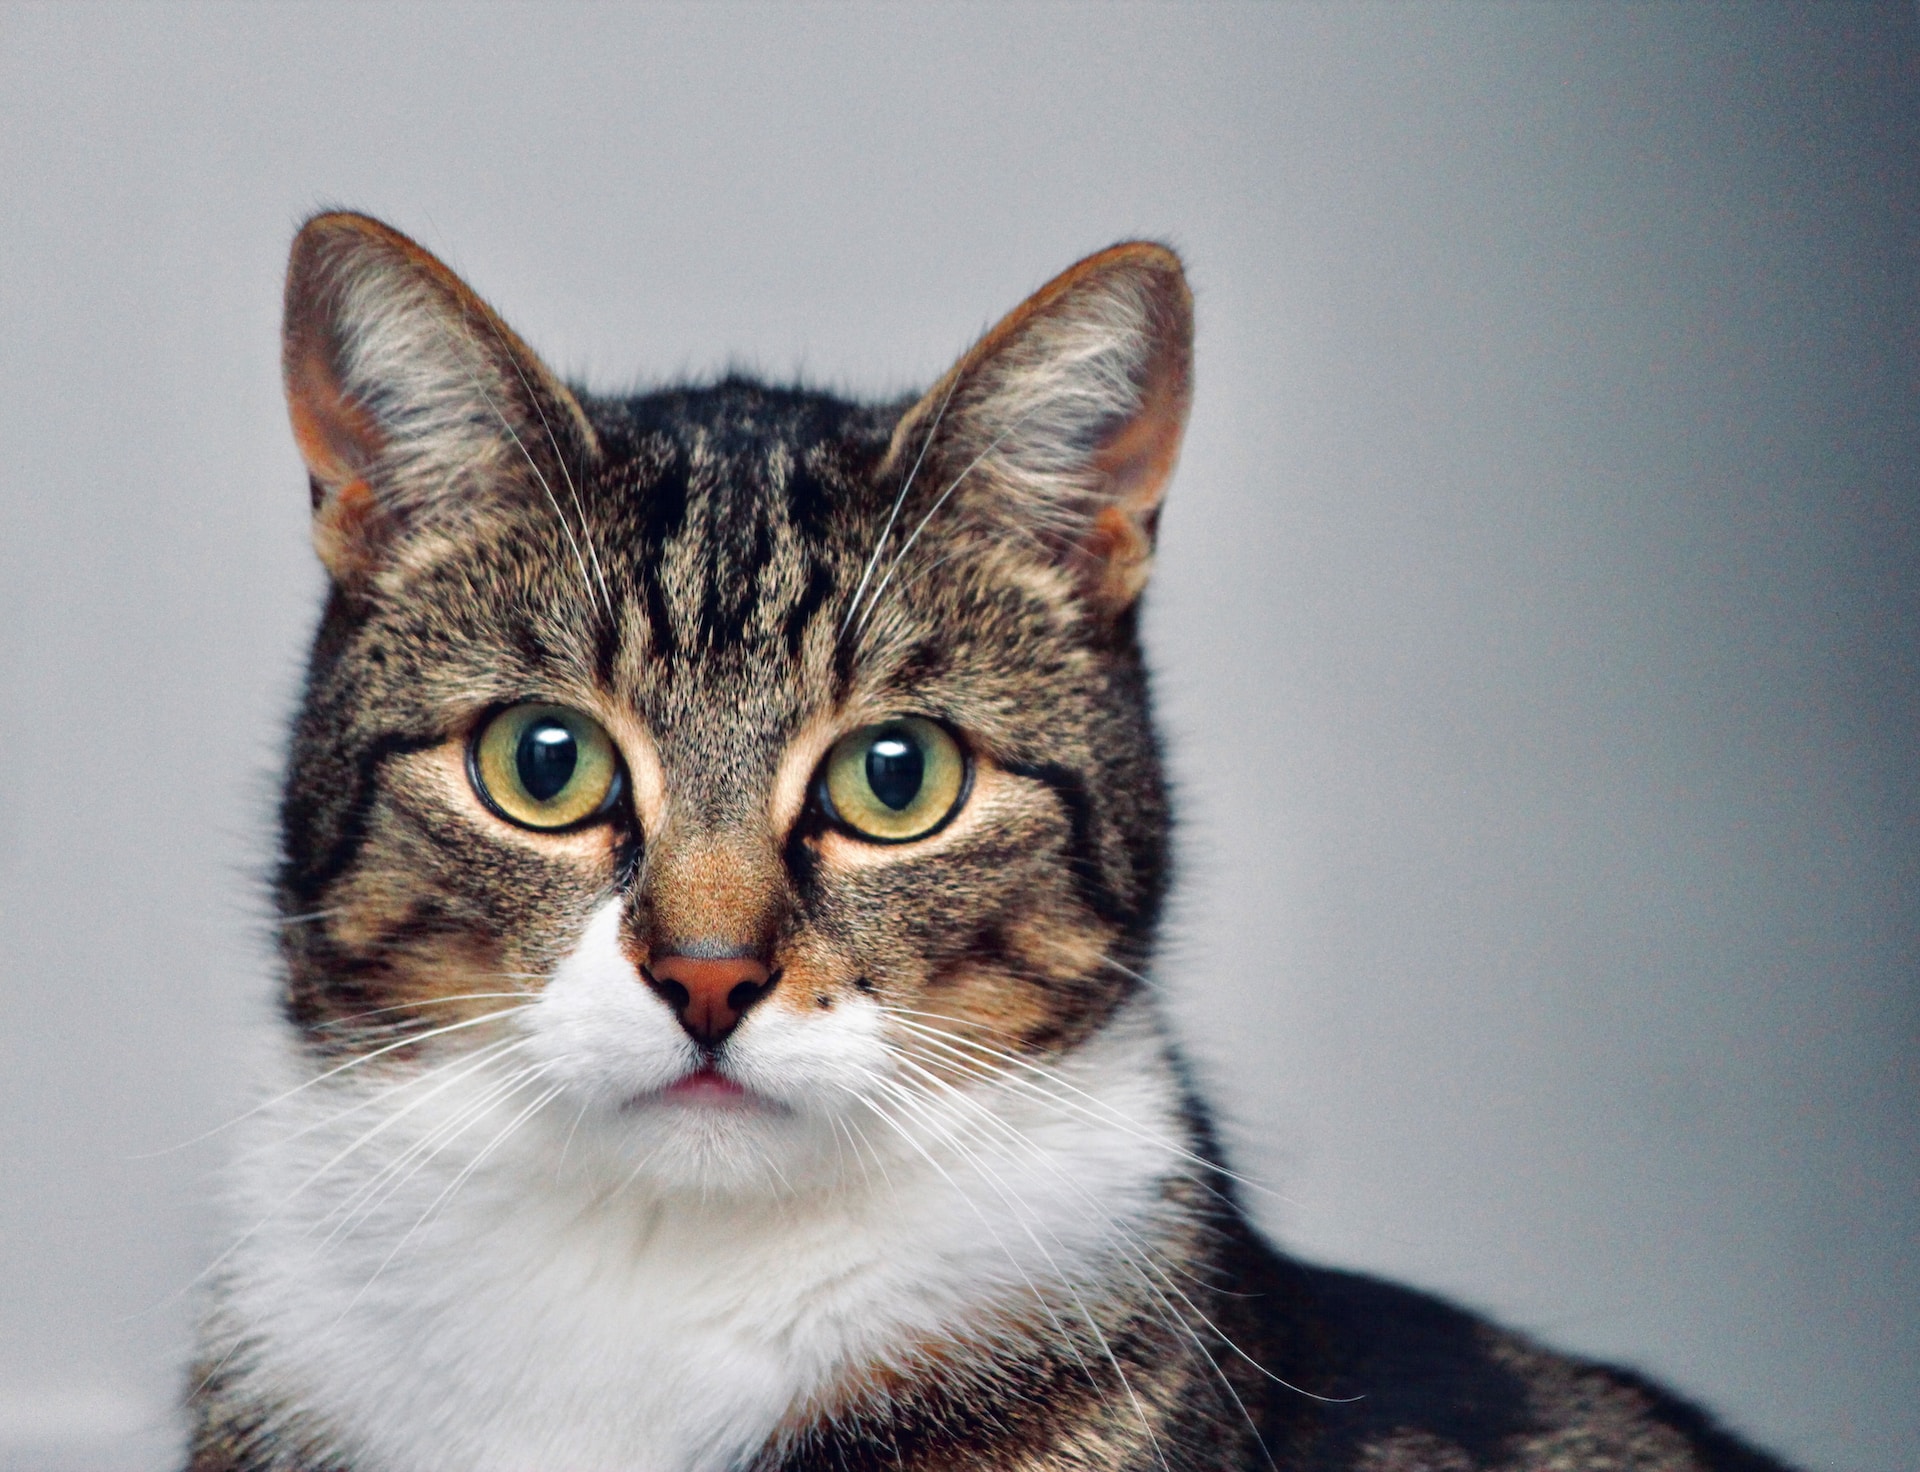 5 fatos impressionantes que talvez você não saiba sobre os gatos